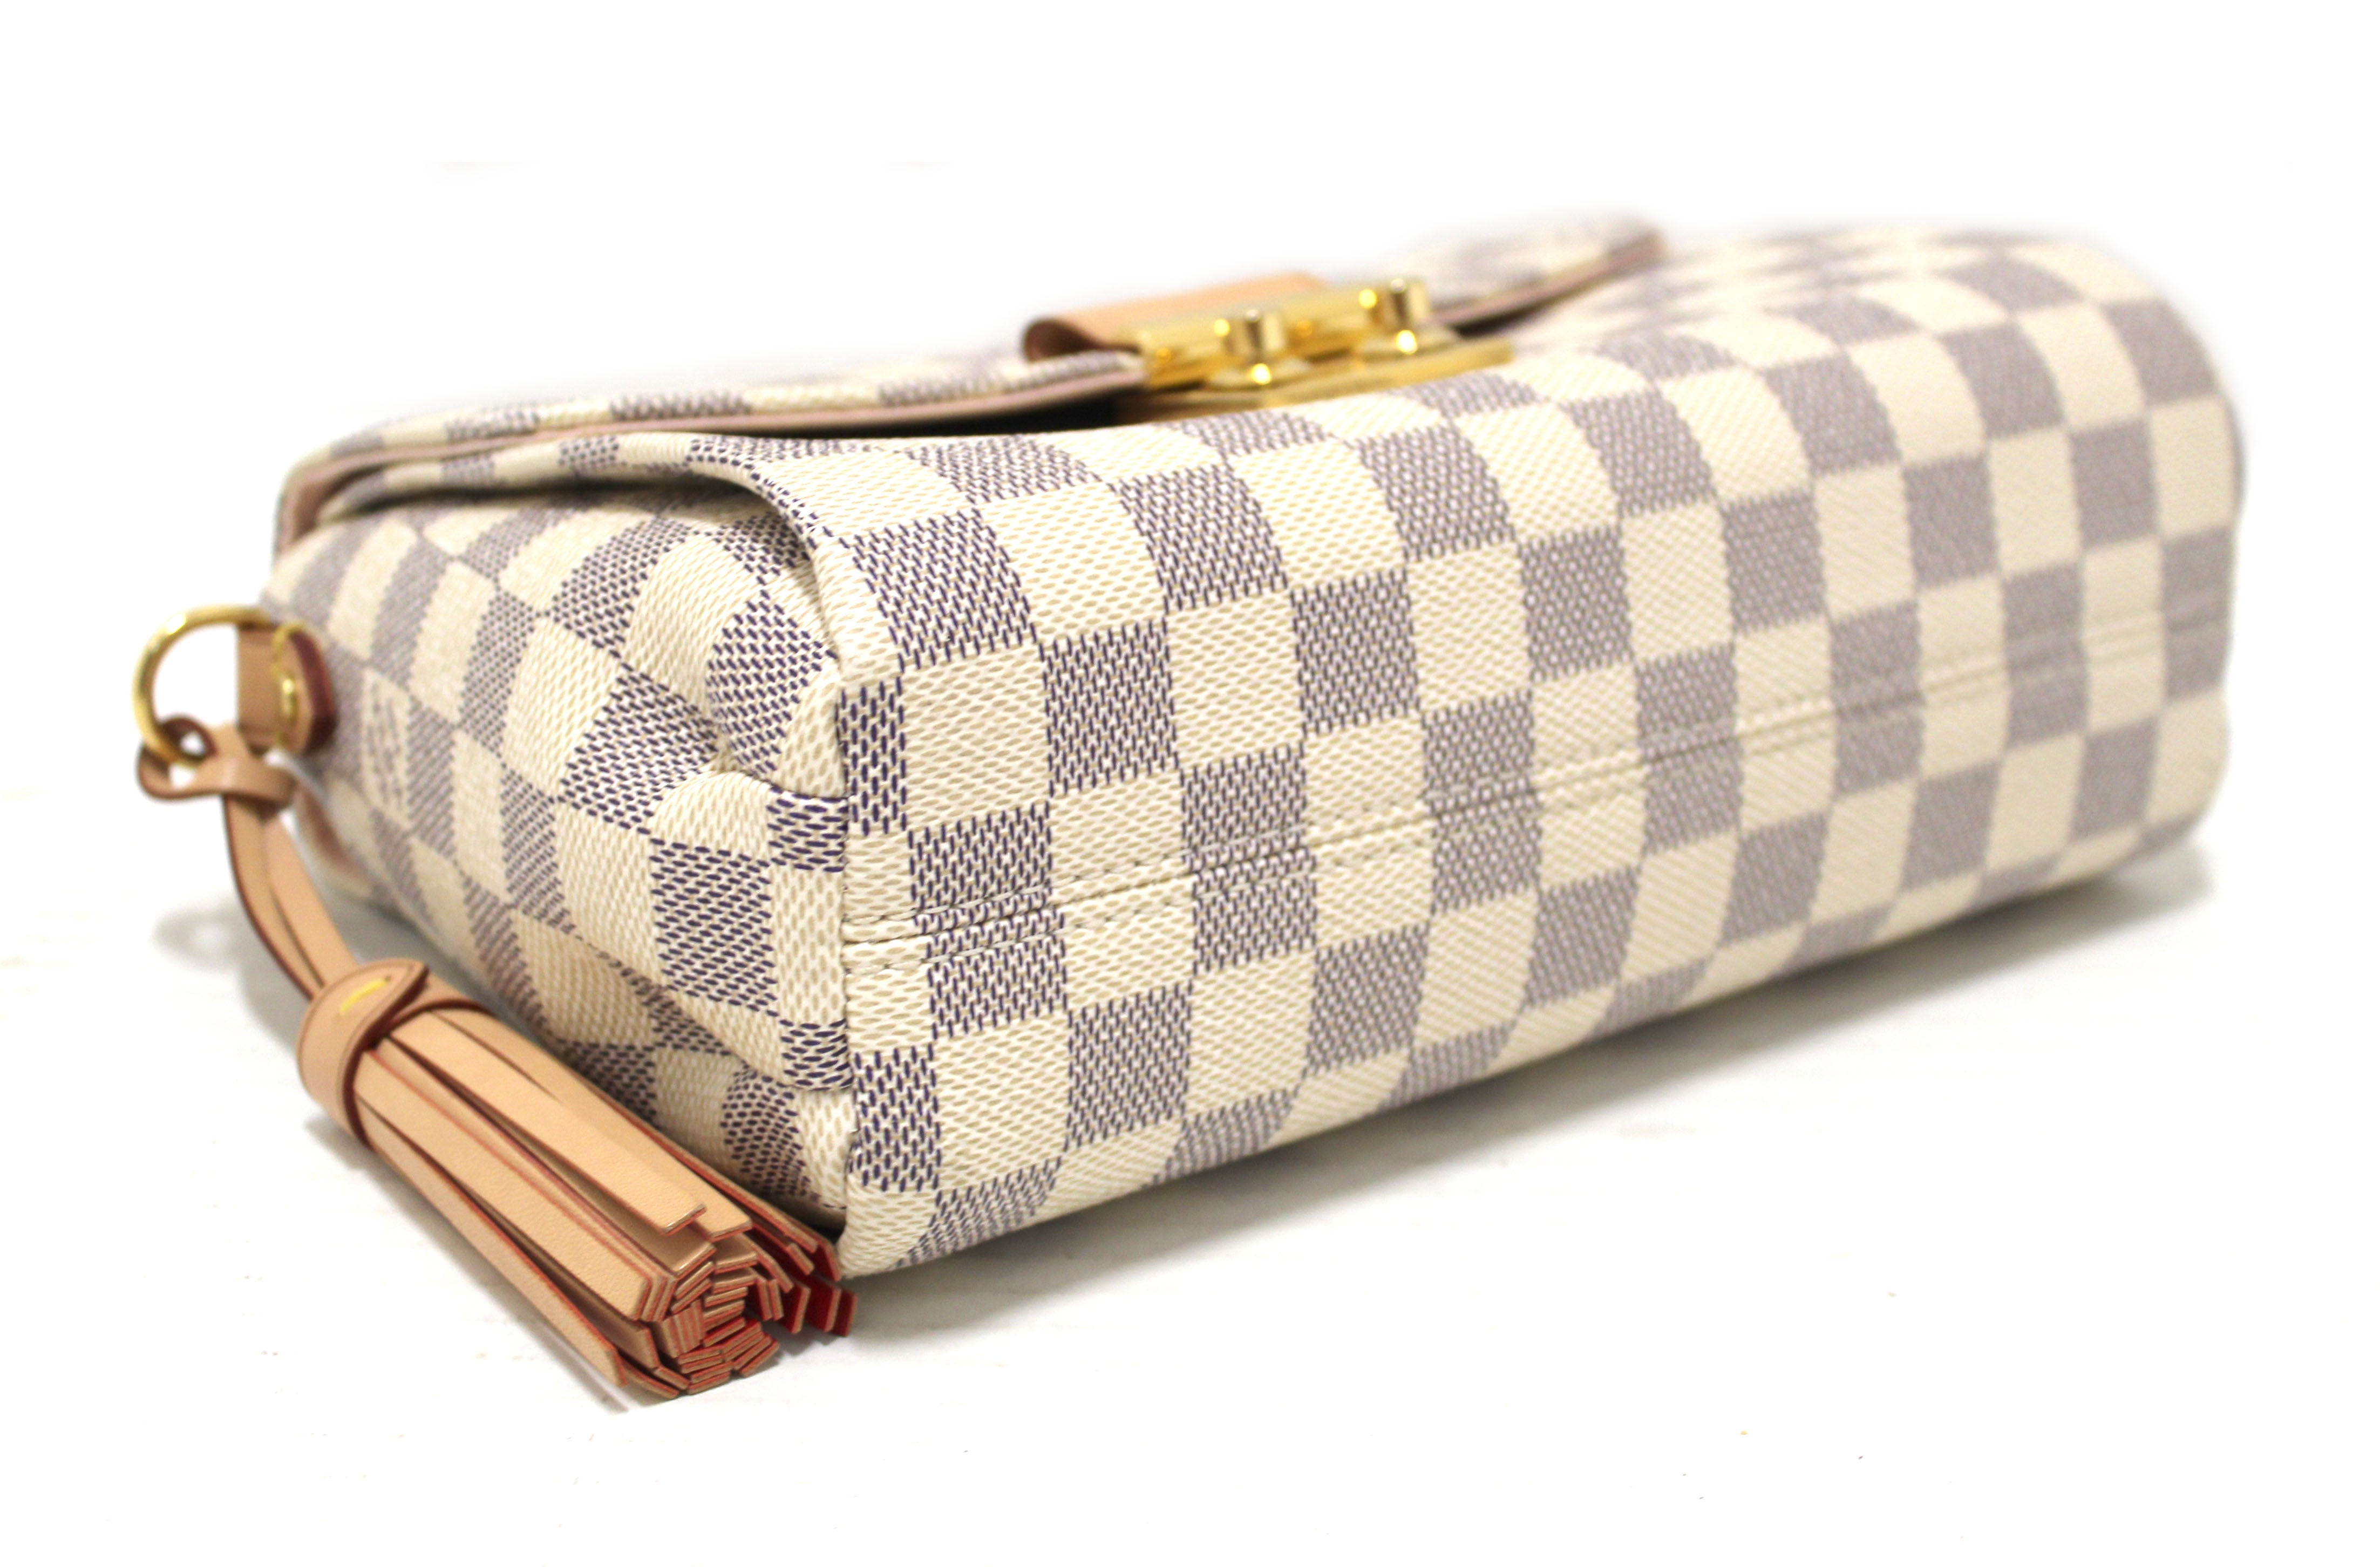 Authentic Louis Vuitton Damier Azur Croisette Handbag/Messenger Bag